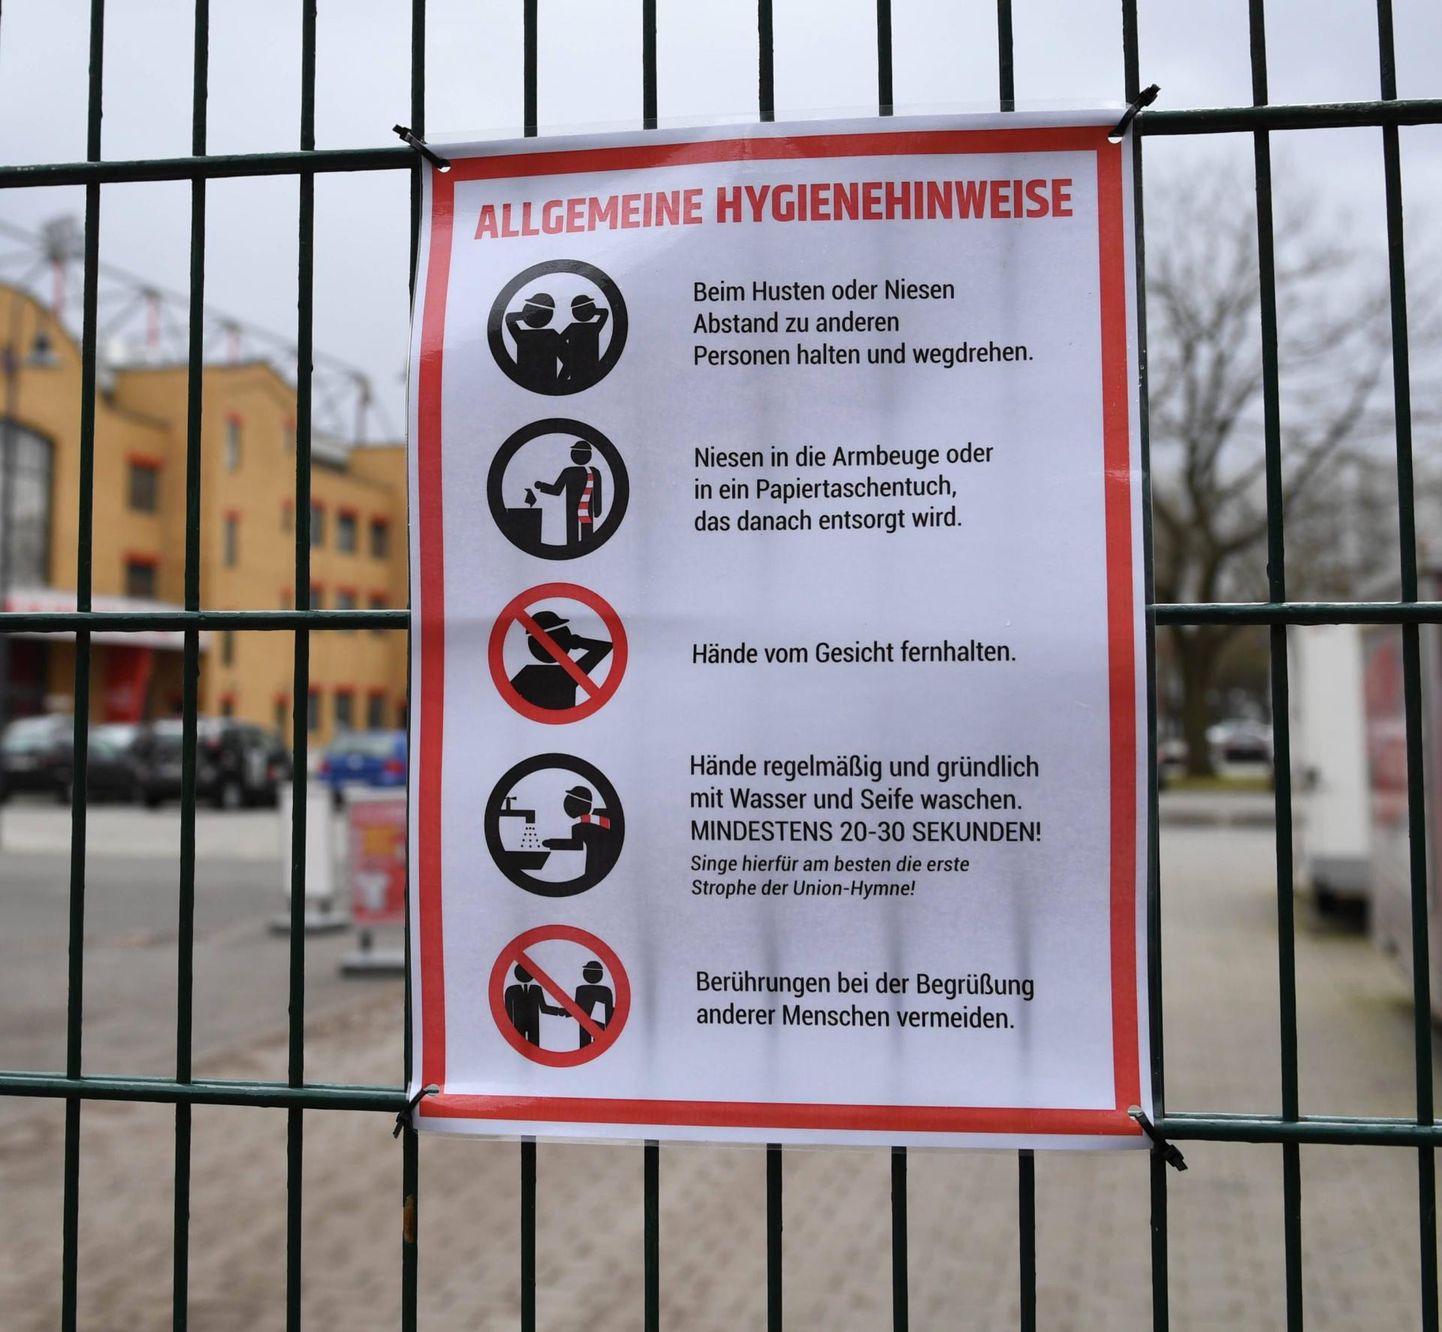 Saksamaal võib jalgpallistaadionide väravatel kohata infosilte, mis kutsuvad järgima hügieeninõudeid, et vältida viirushaiguste levikut ning hoida seeläbi nii enda kui ka kaaskodanike tervist.